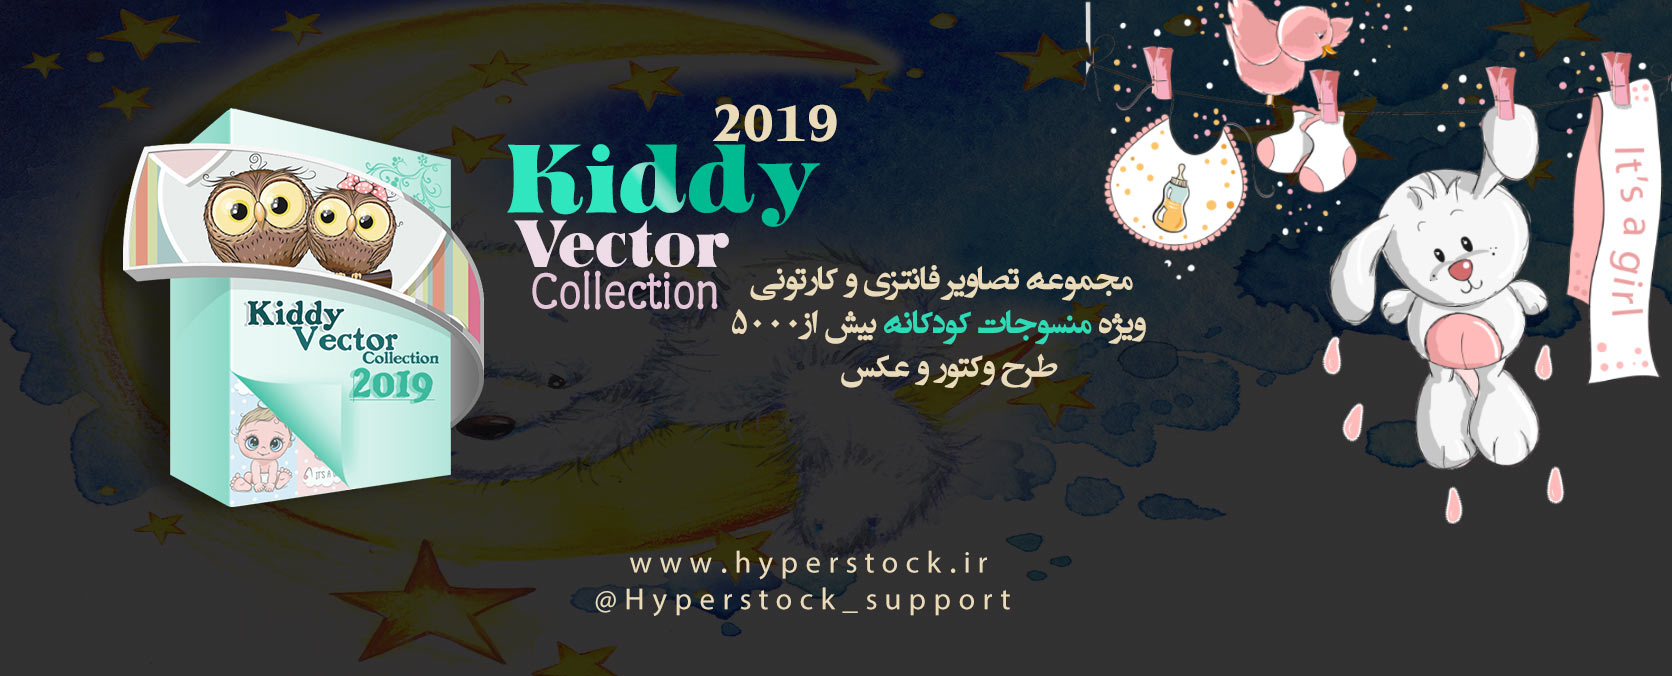 مجموعه تصاویر فانتزی وکارتونی مخصوص منسوجات کودکانه Kiddy Vector 2019